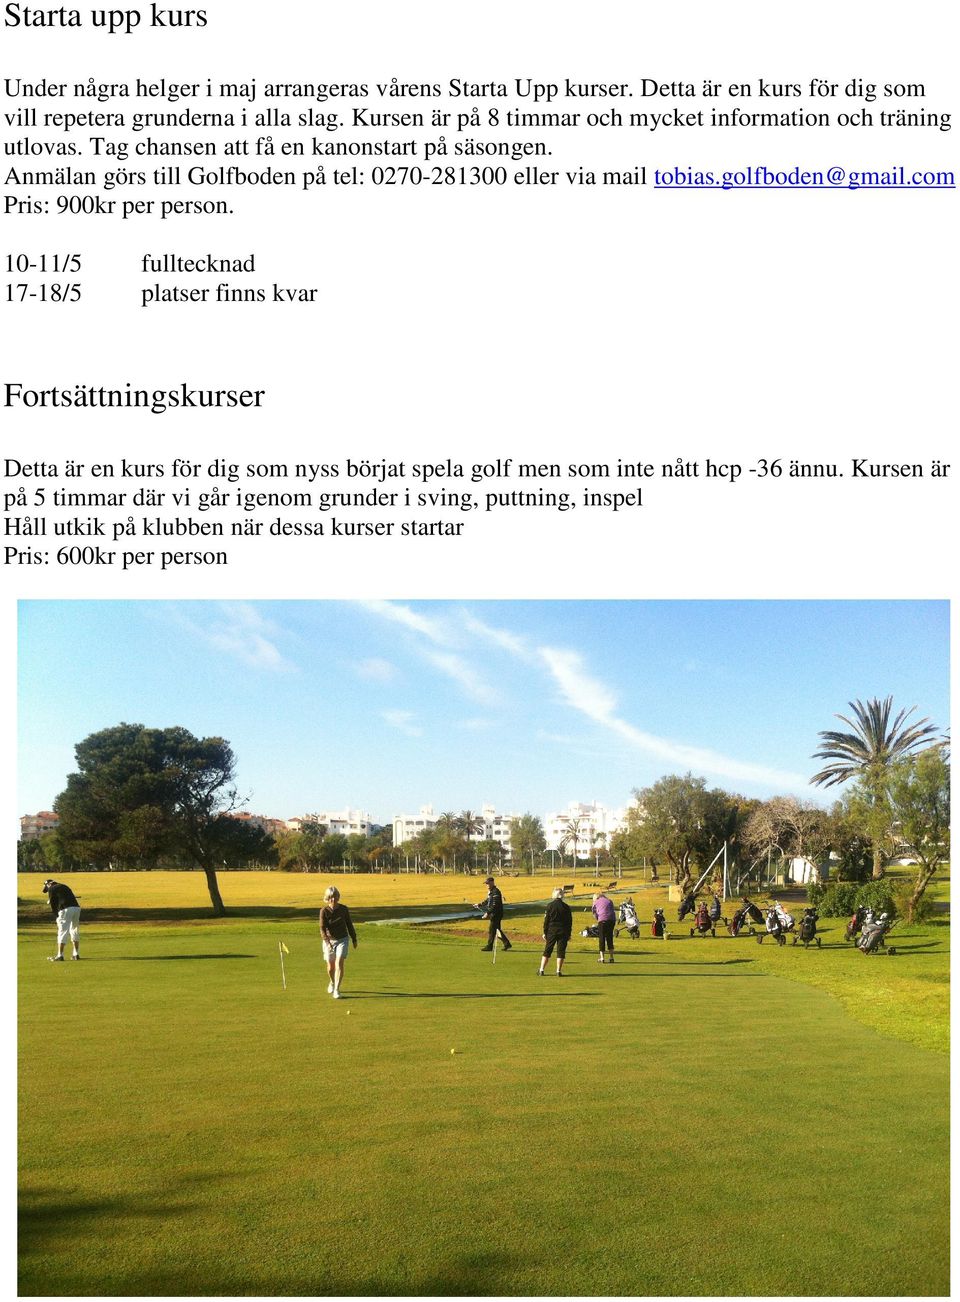 Anmälan görs till Golfboden på tel: 0270-281300 eller via mail tobias.golfboden@gmail.com Pris: 900kr per person.